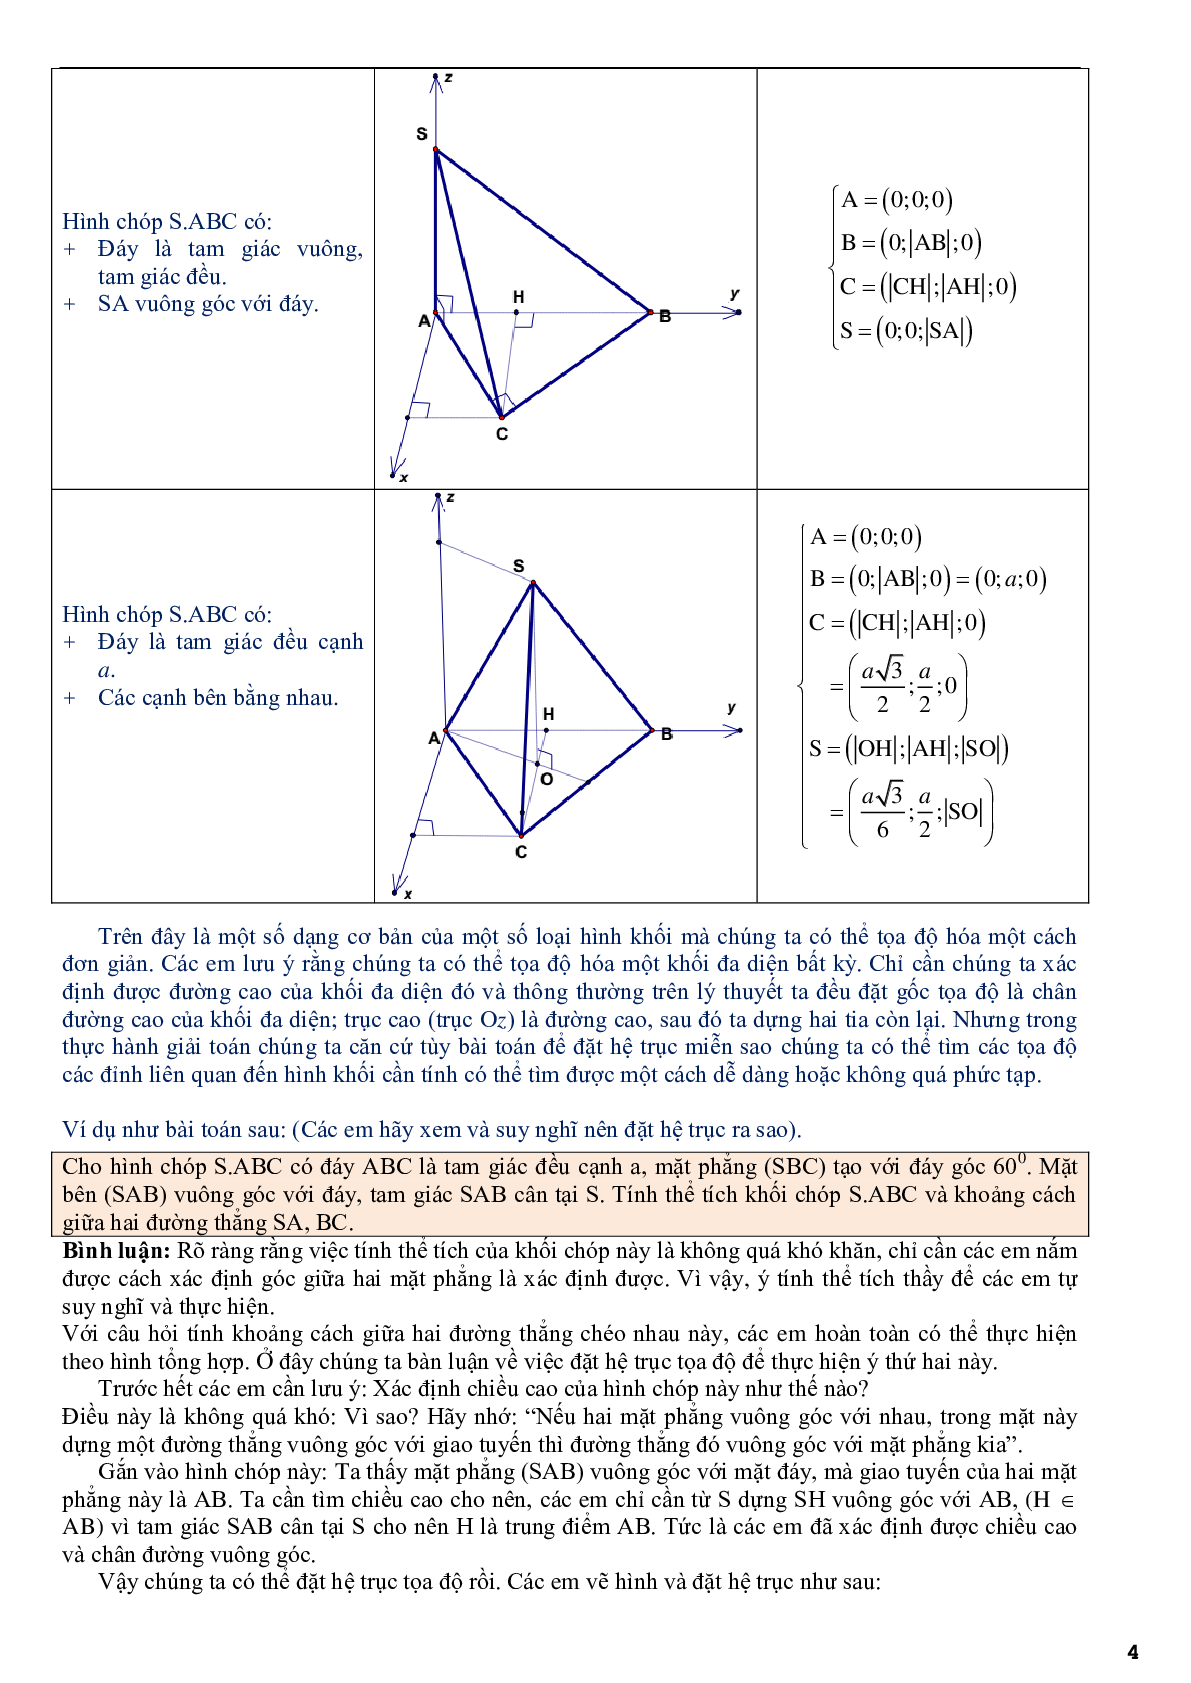 Ứng dụng phương pháp tọa độ để giải bài toán hình học không gian - phần 2 (trang 4)